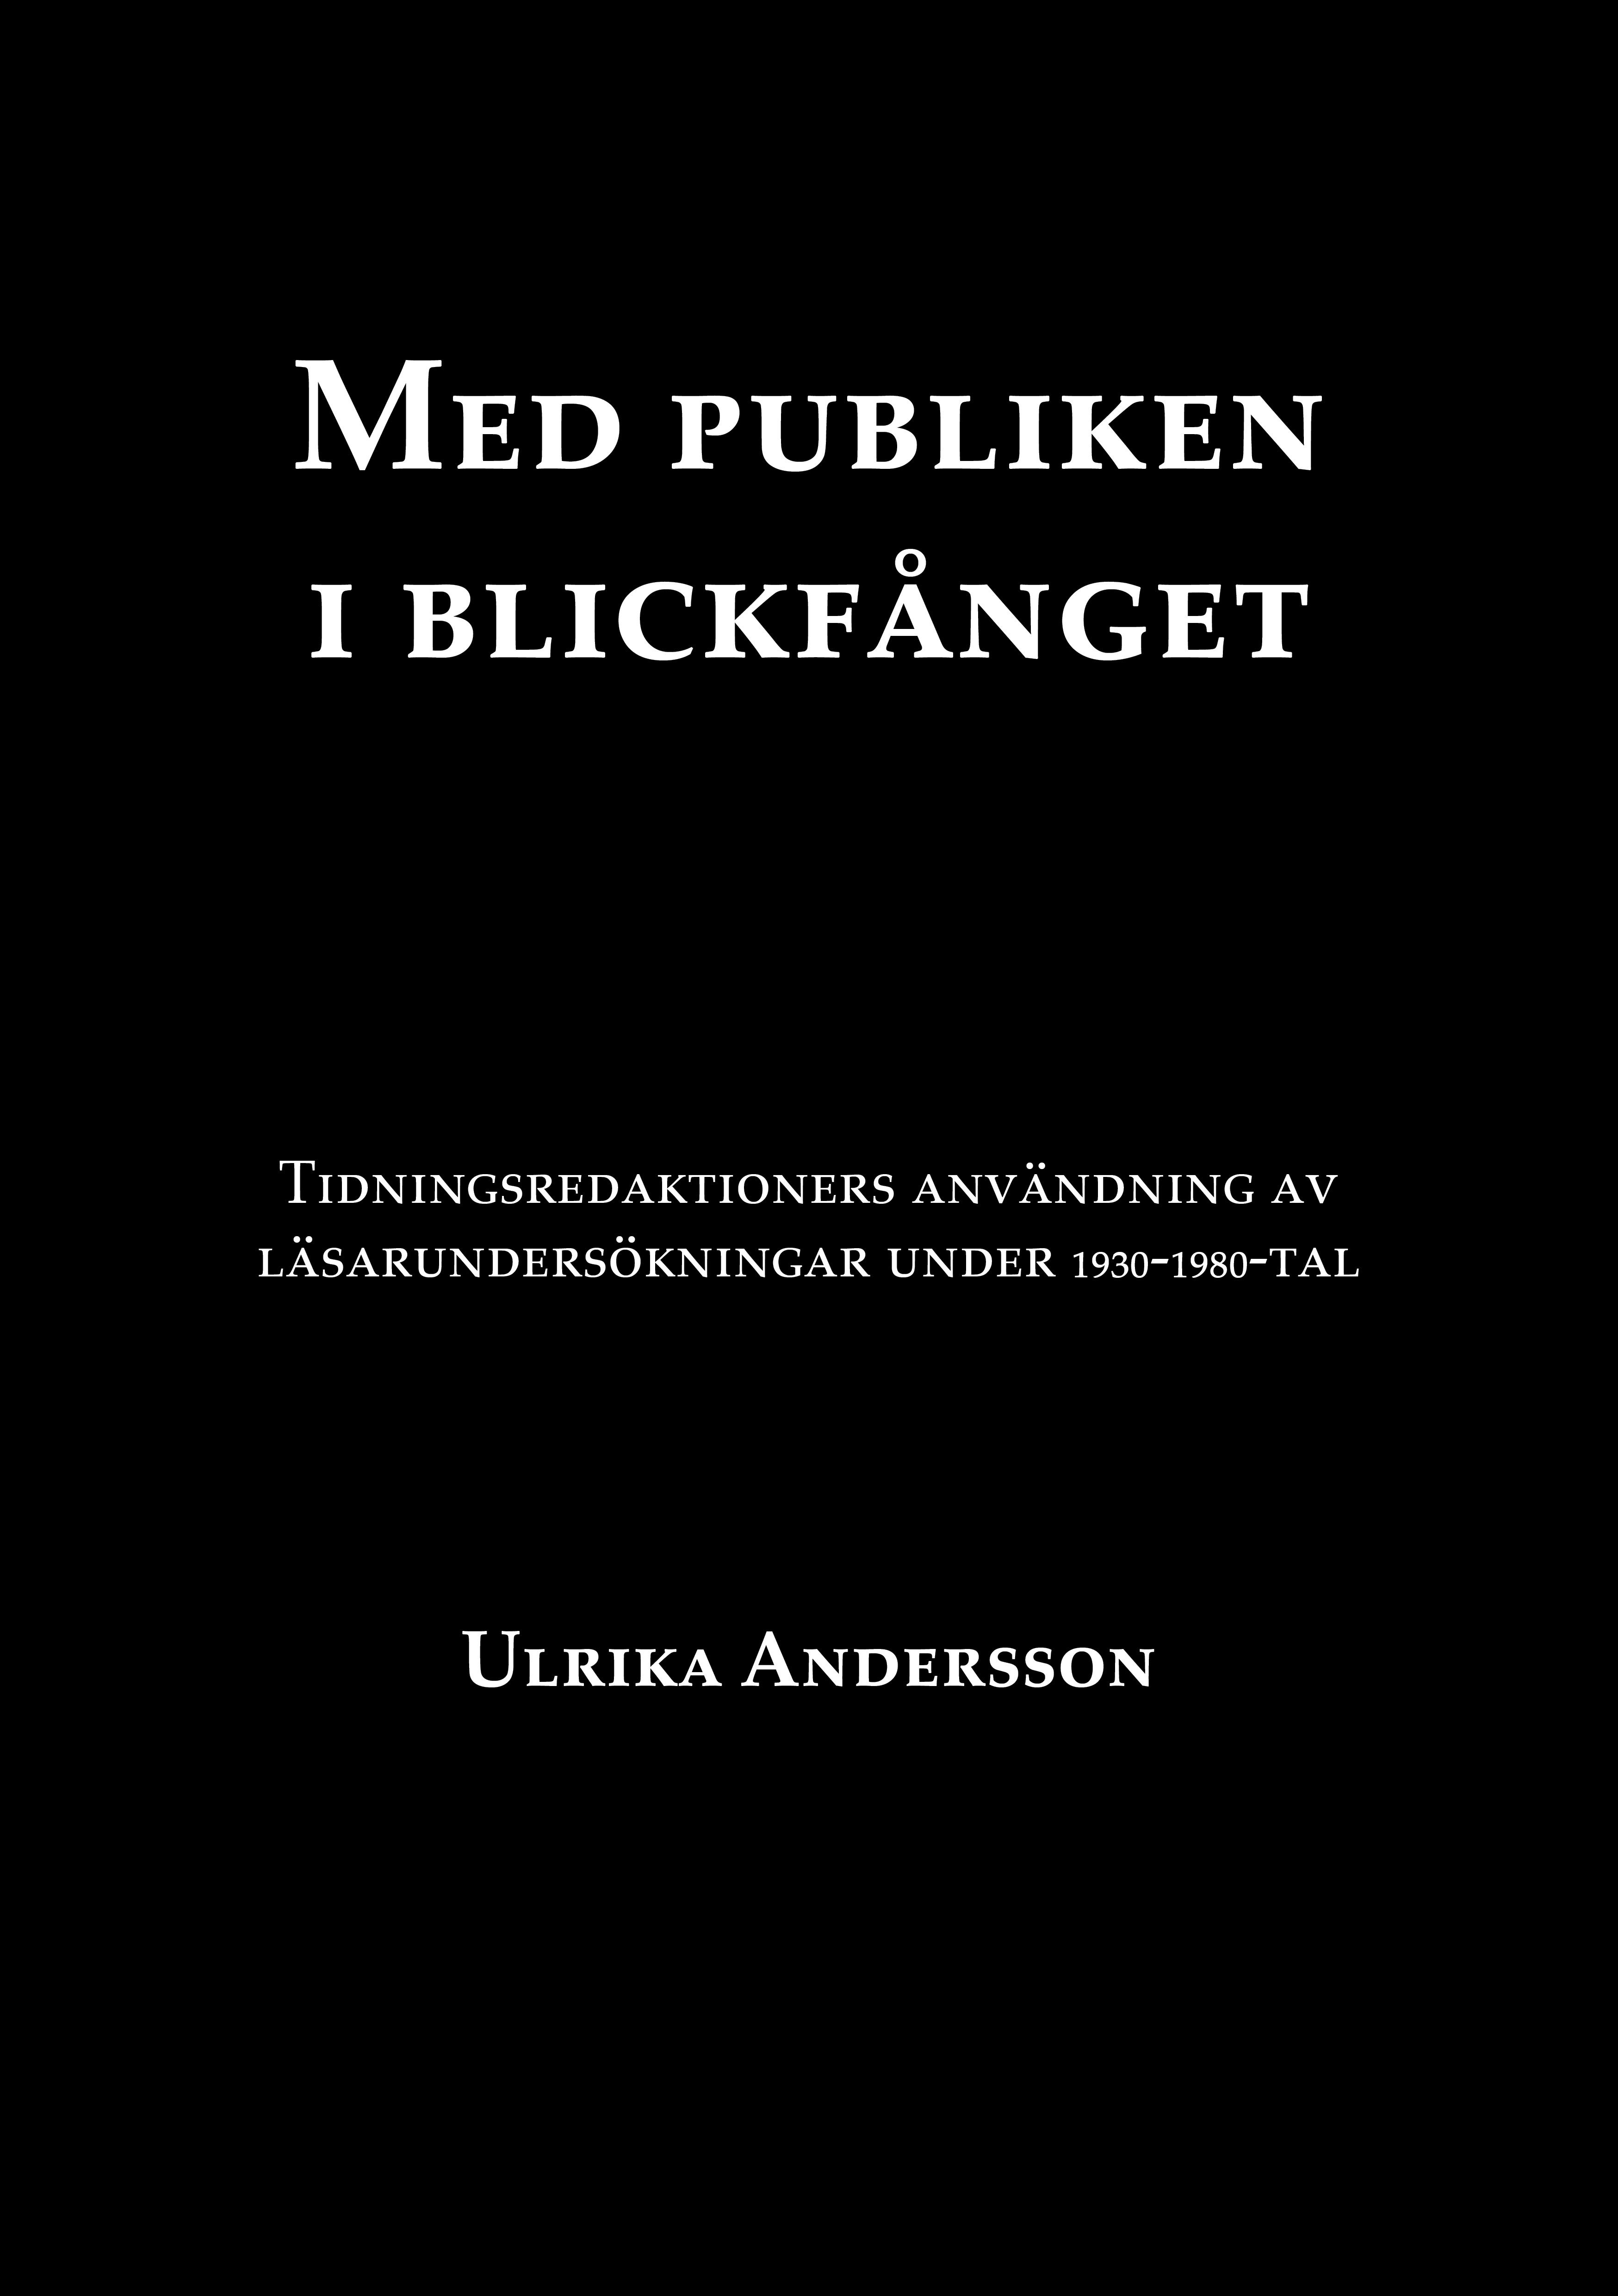 Med publiken i blickfånget, e-bok av Ulrika Andersson